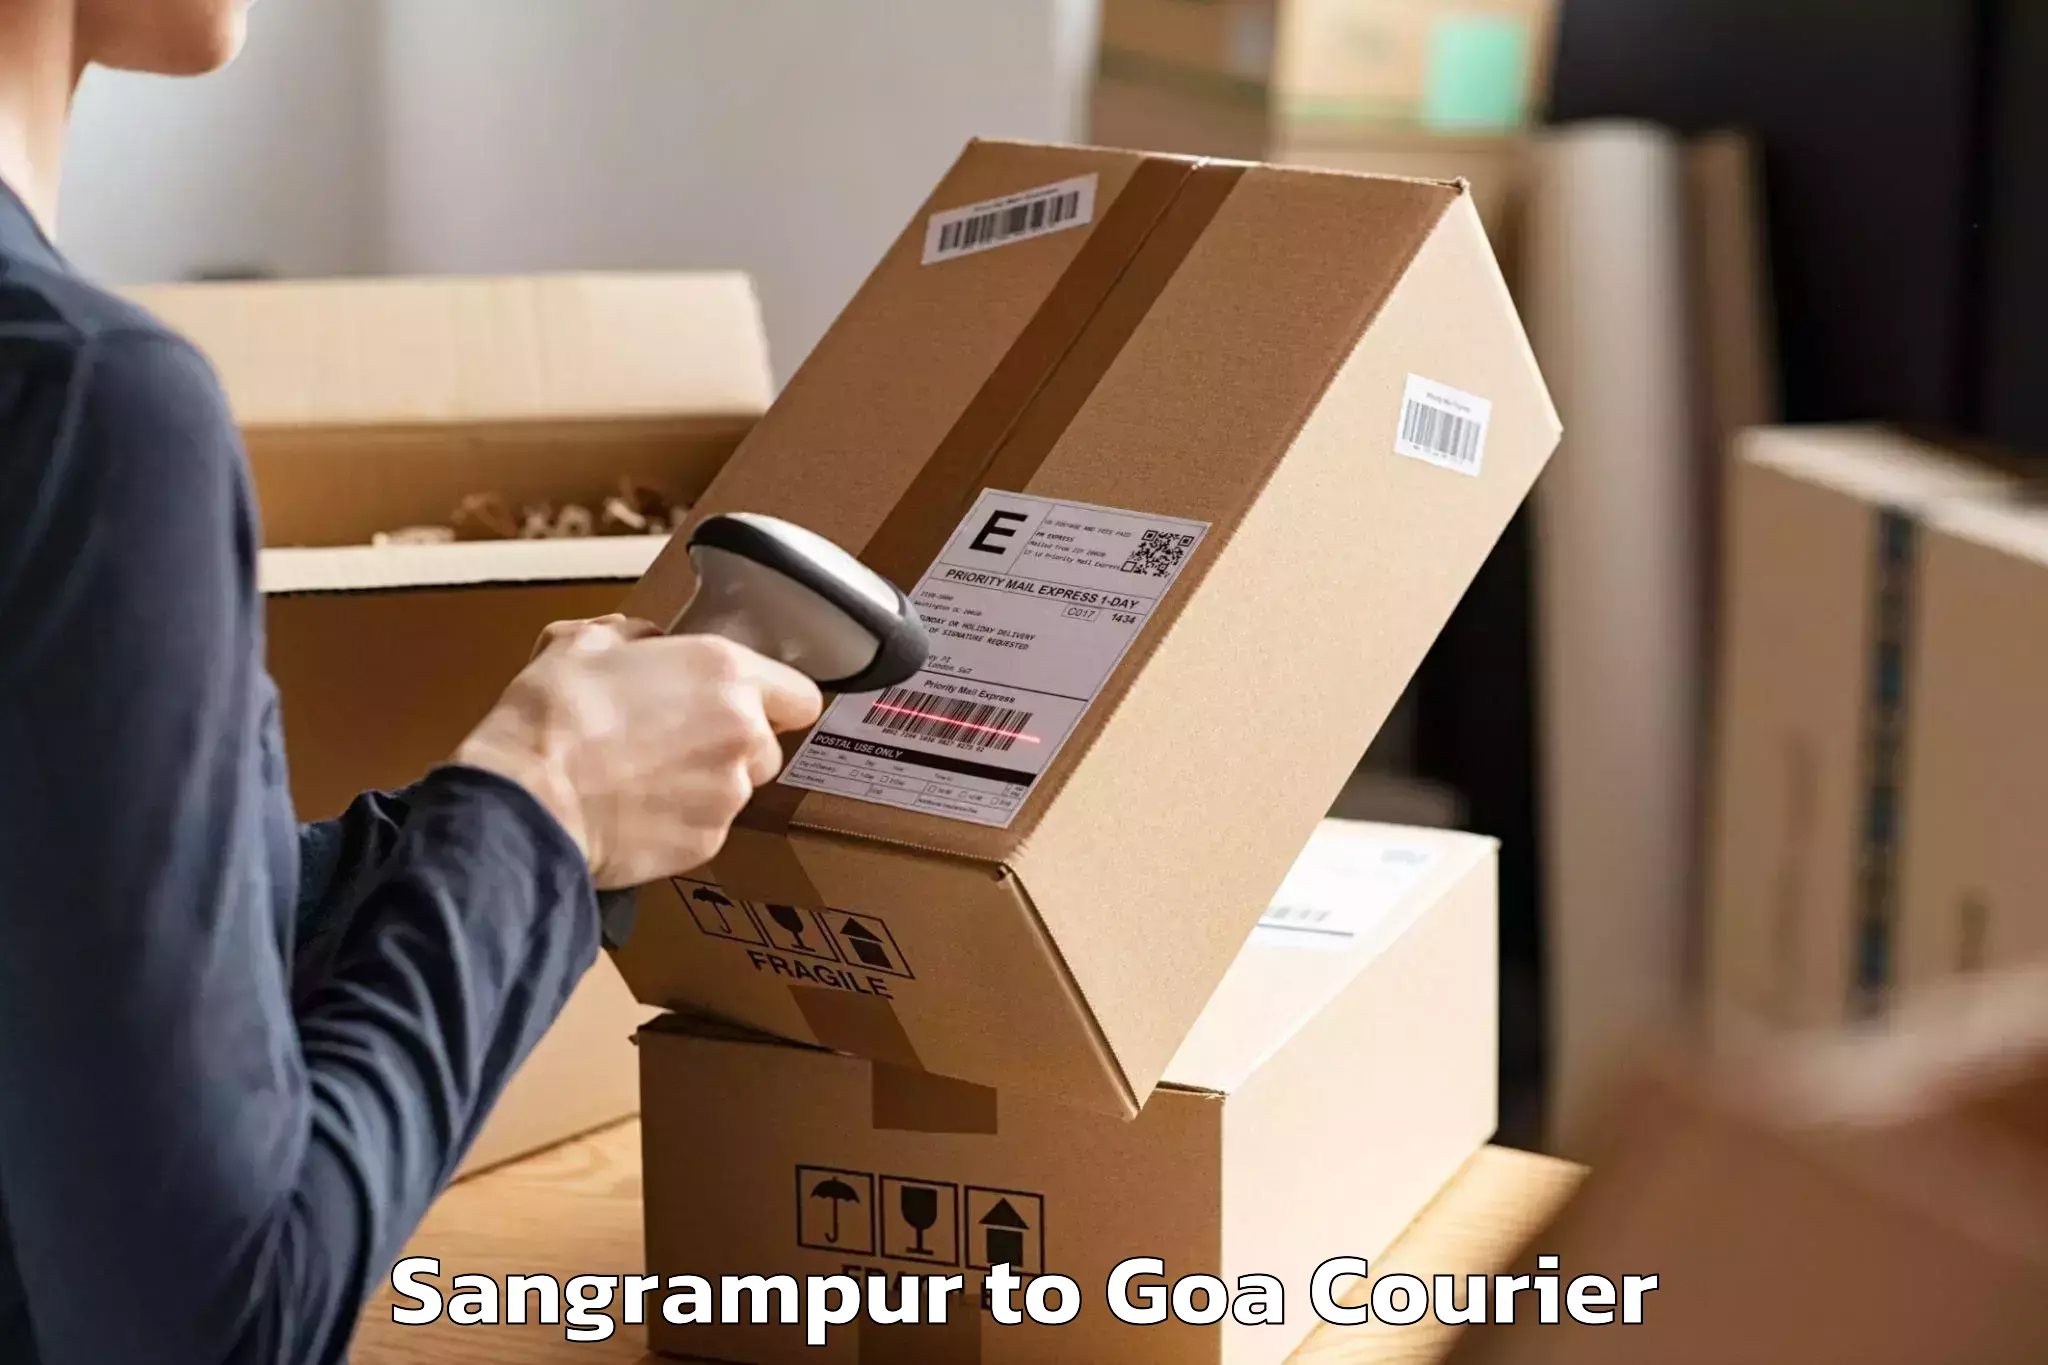 Nationwide moving services Sangrampur to Panjim